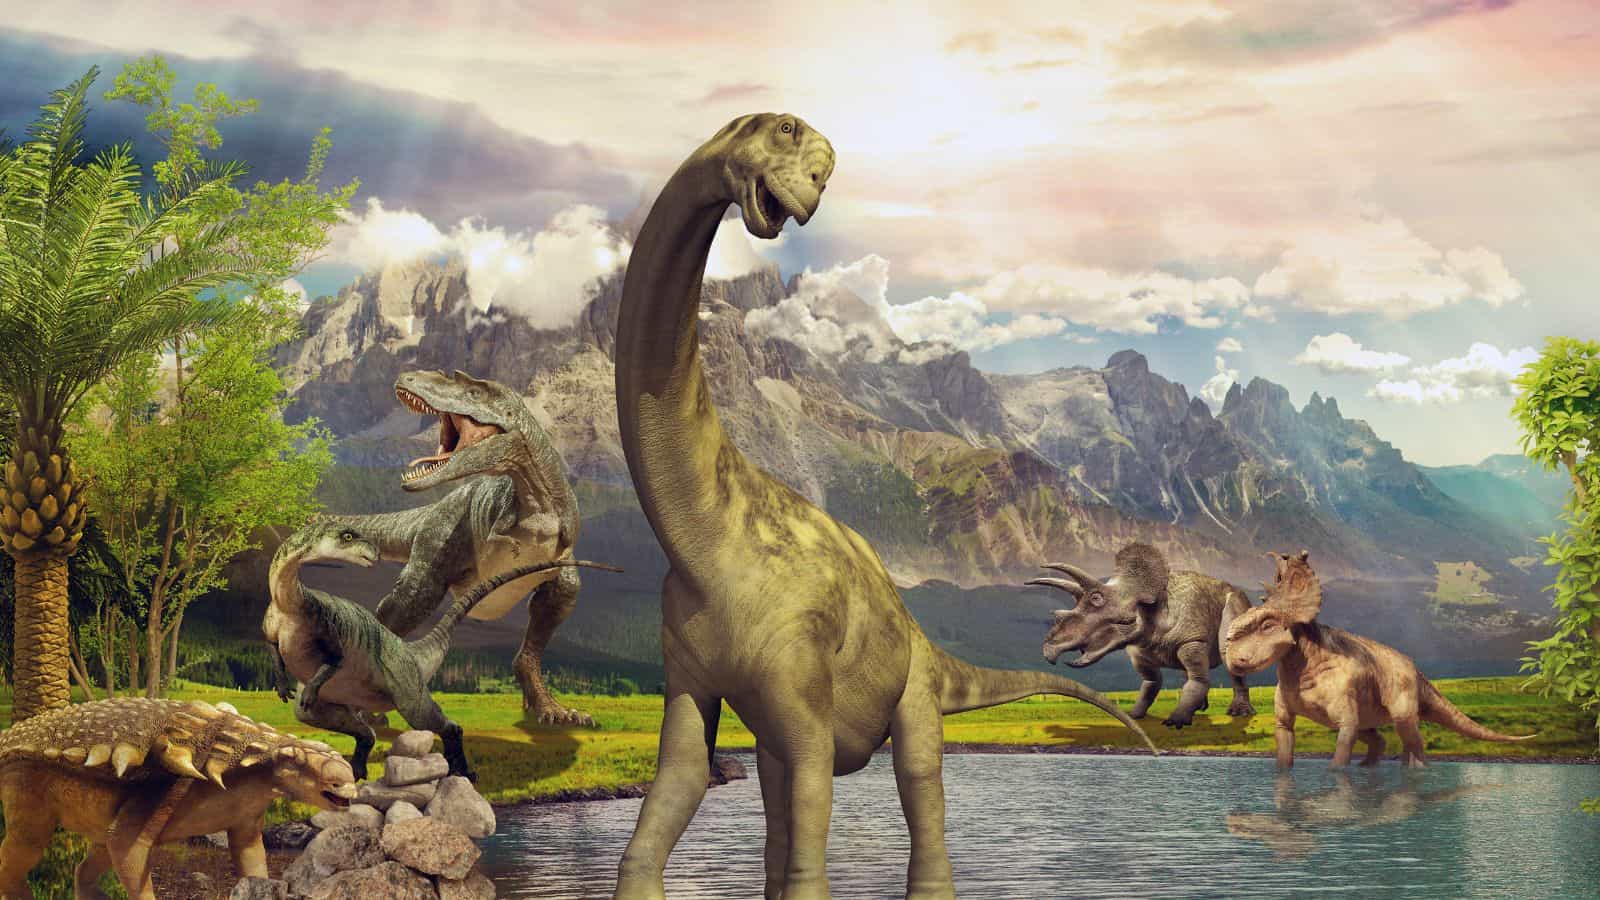 Dinosaurs (150 Million Years Ago)